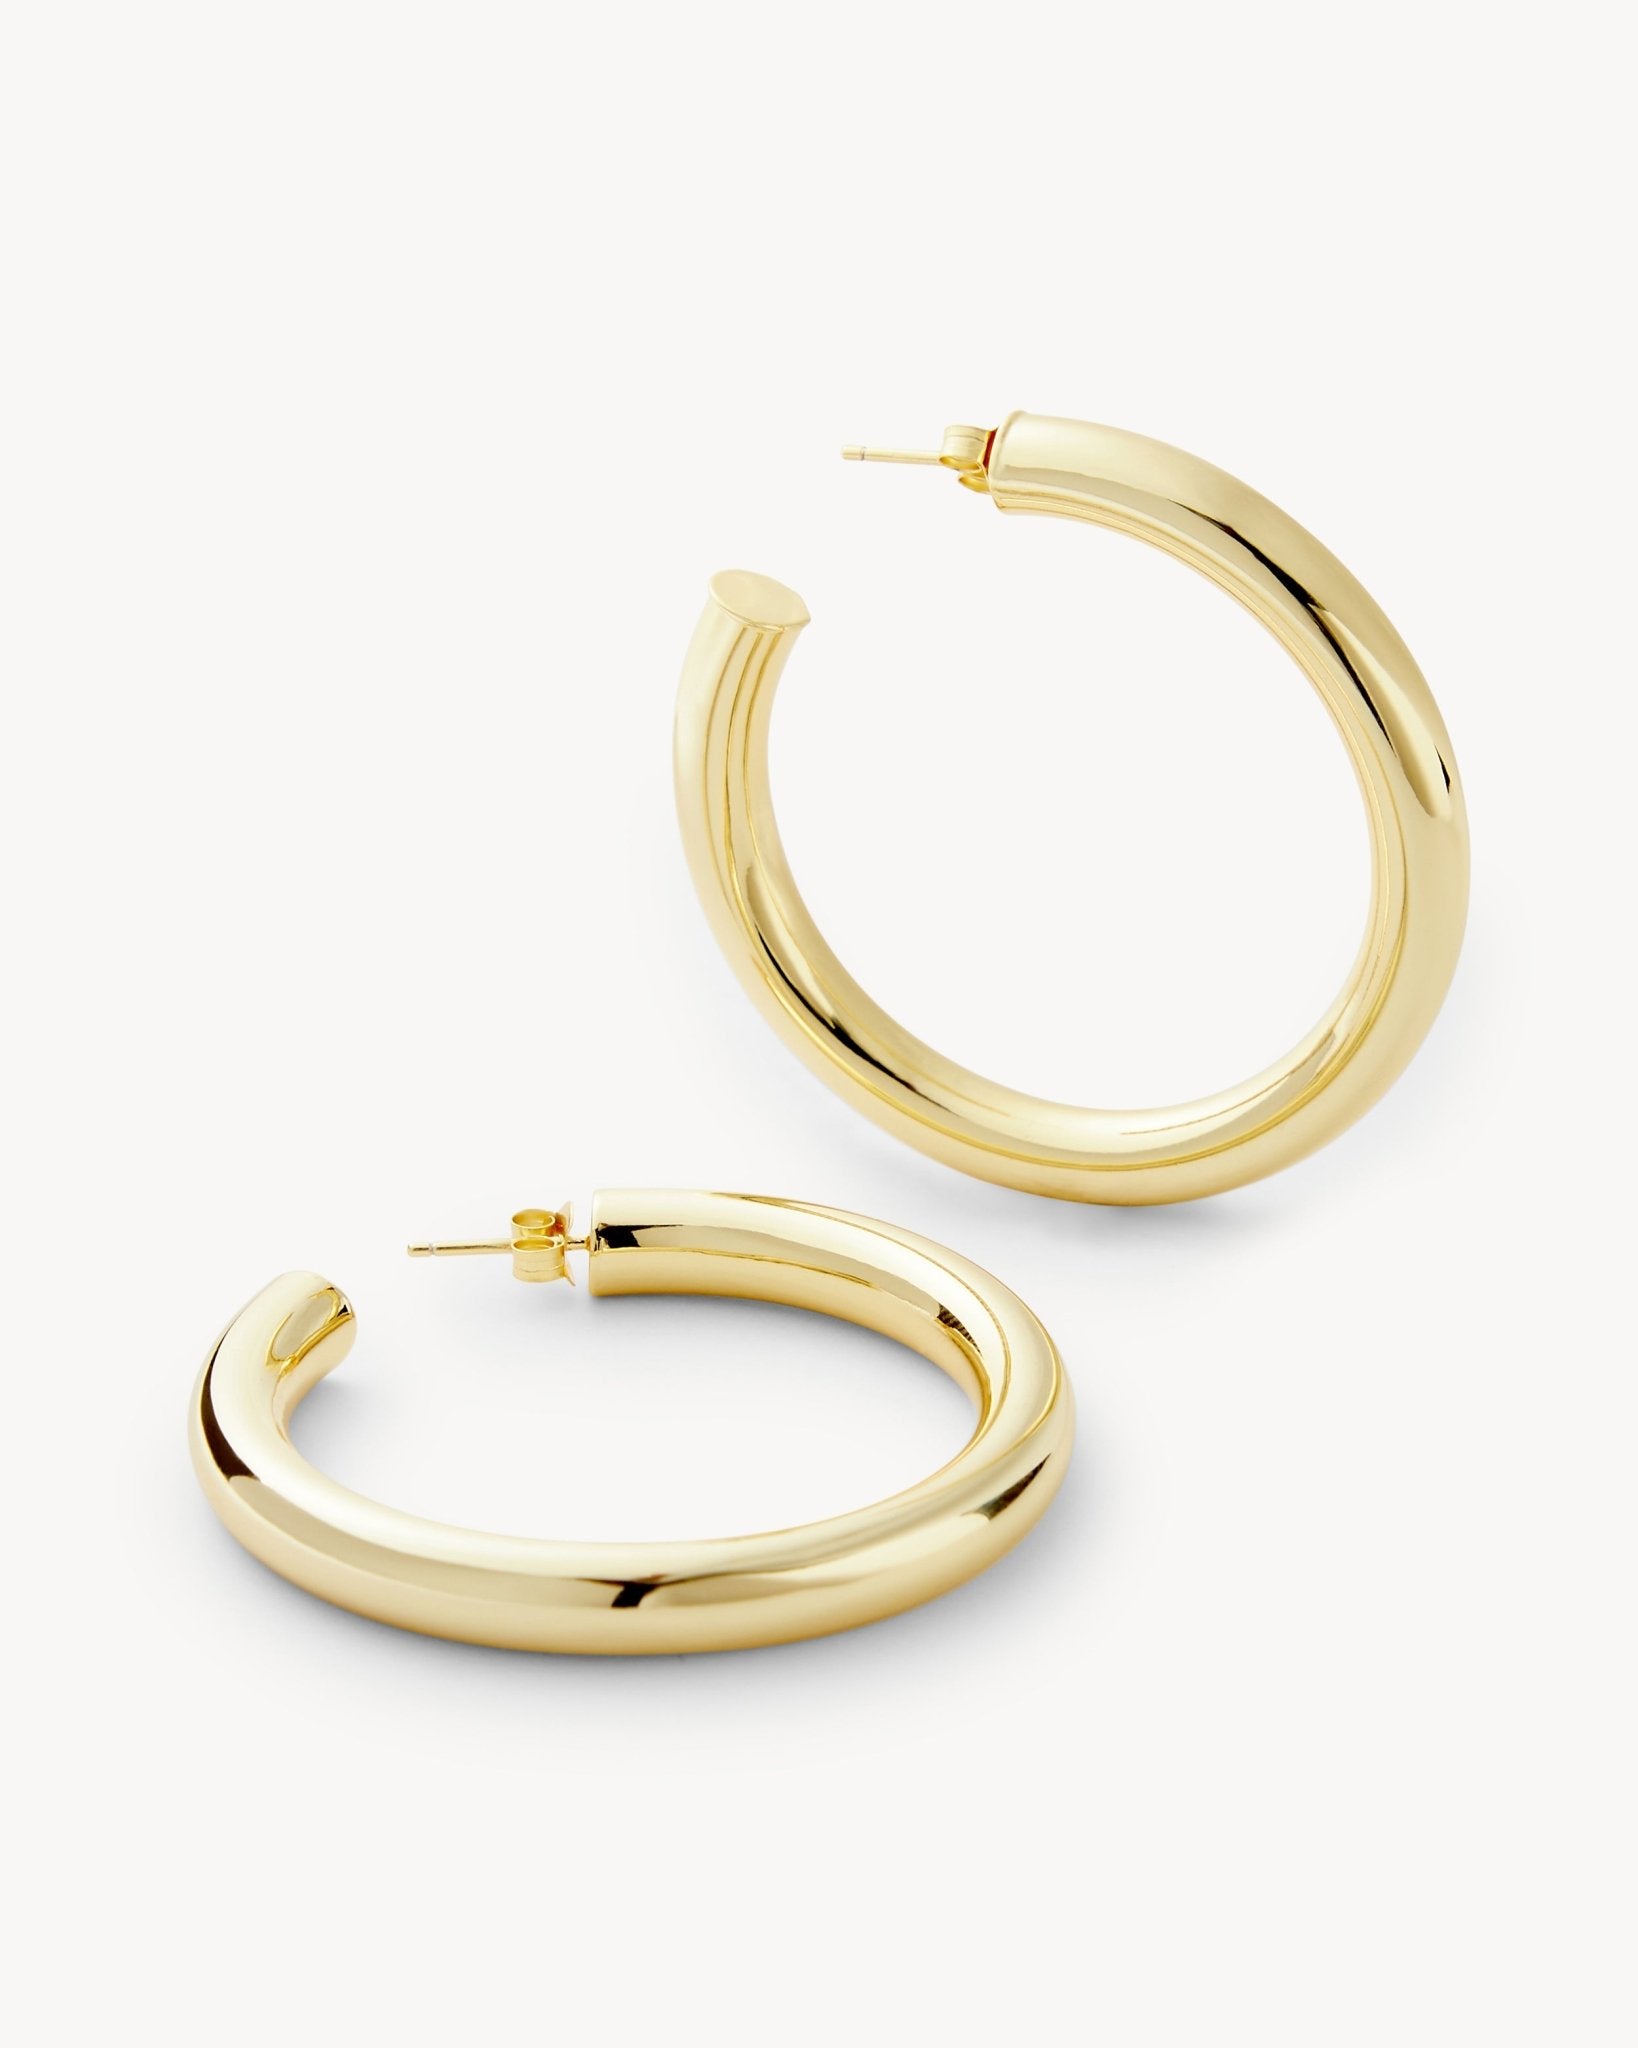 Machete Large Gold Hoops Earrings – MACHETE